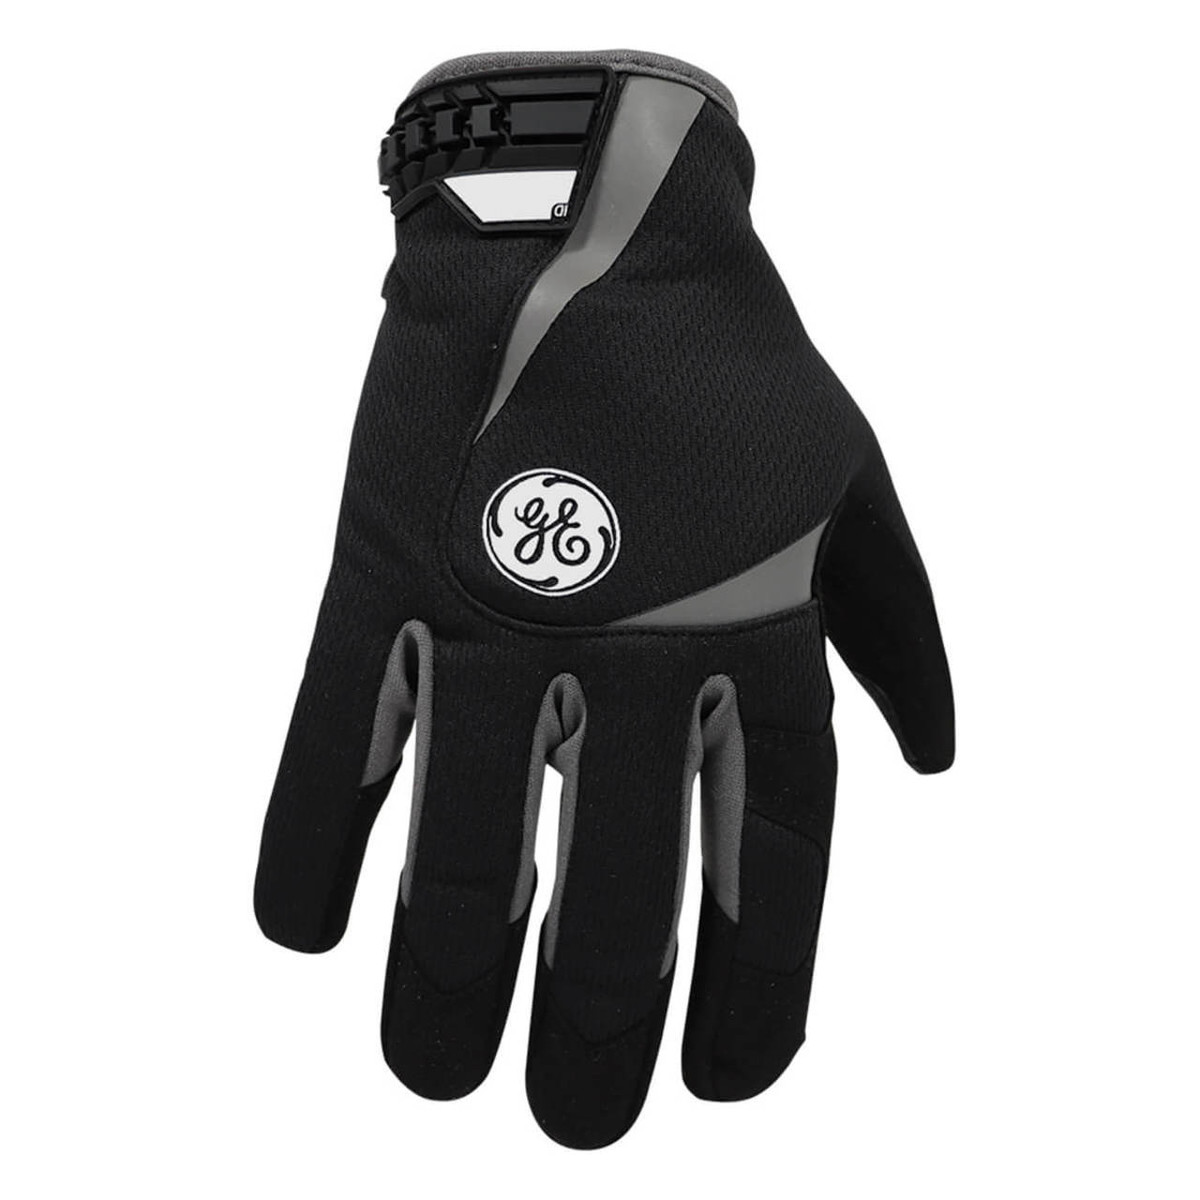 Hi-Viz Lime Mechanical Glove - Safety Imprints